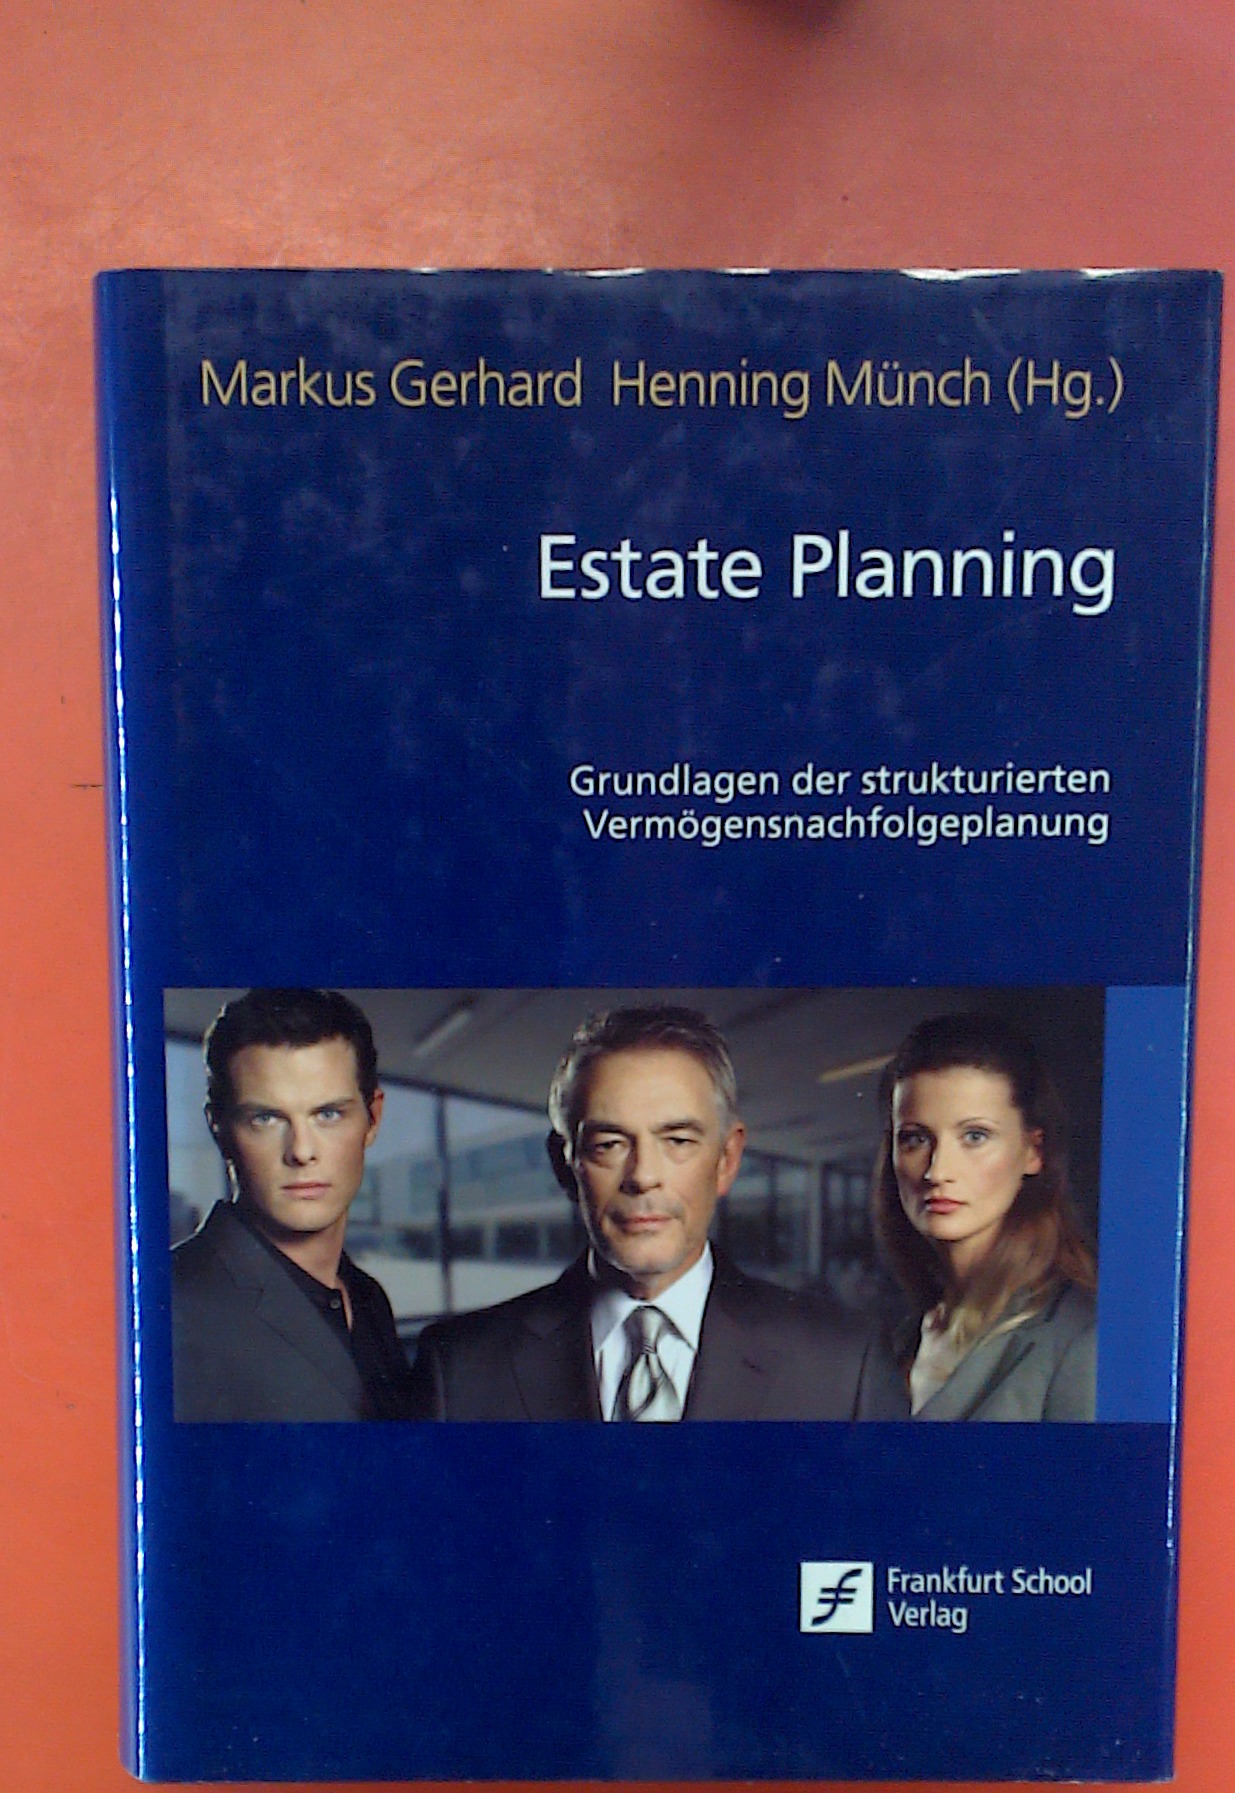 Estate Planning. Grundlagen der strukturierten Vermögensnachfolgeplanung. 1. Auflage. - Markus Gerhard, Henning Münch (Hg.)